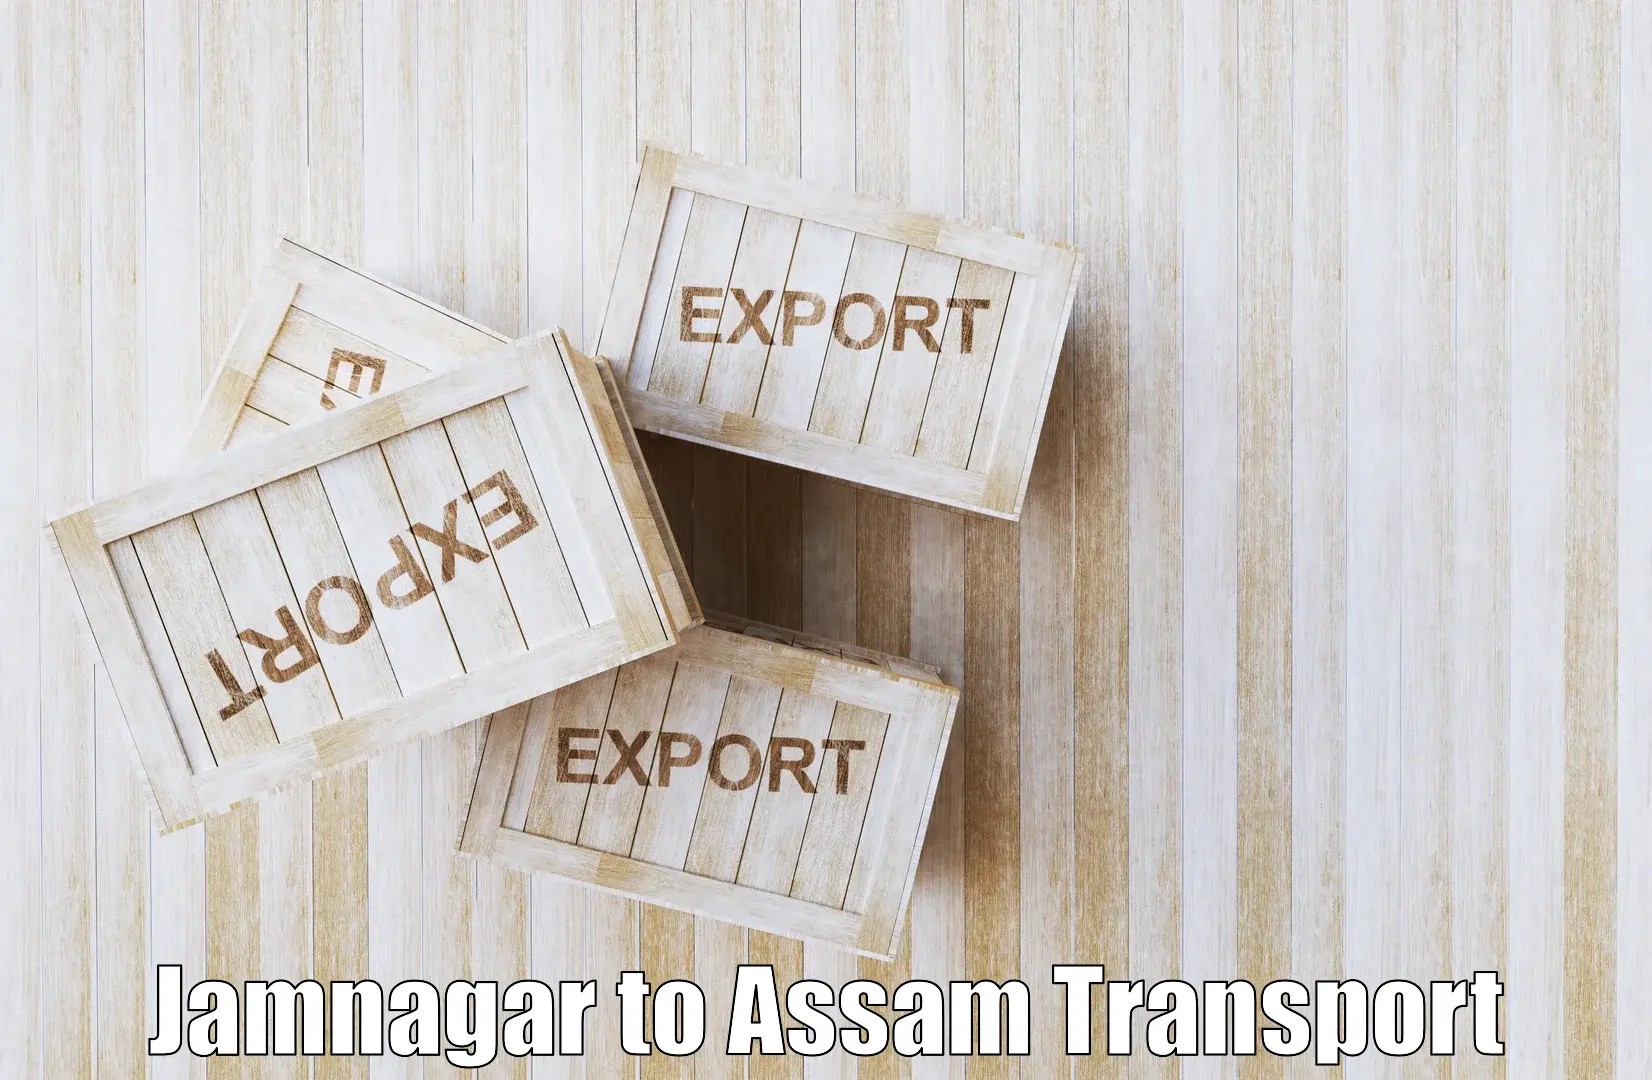 Container transport service Jamnagar to Nalbari